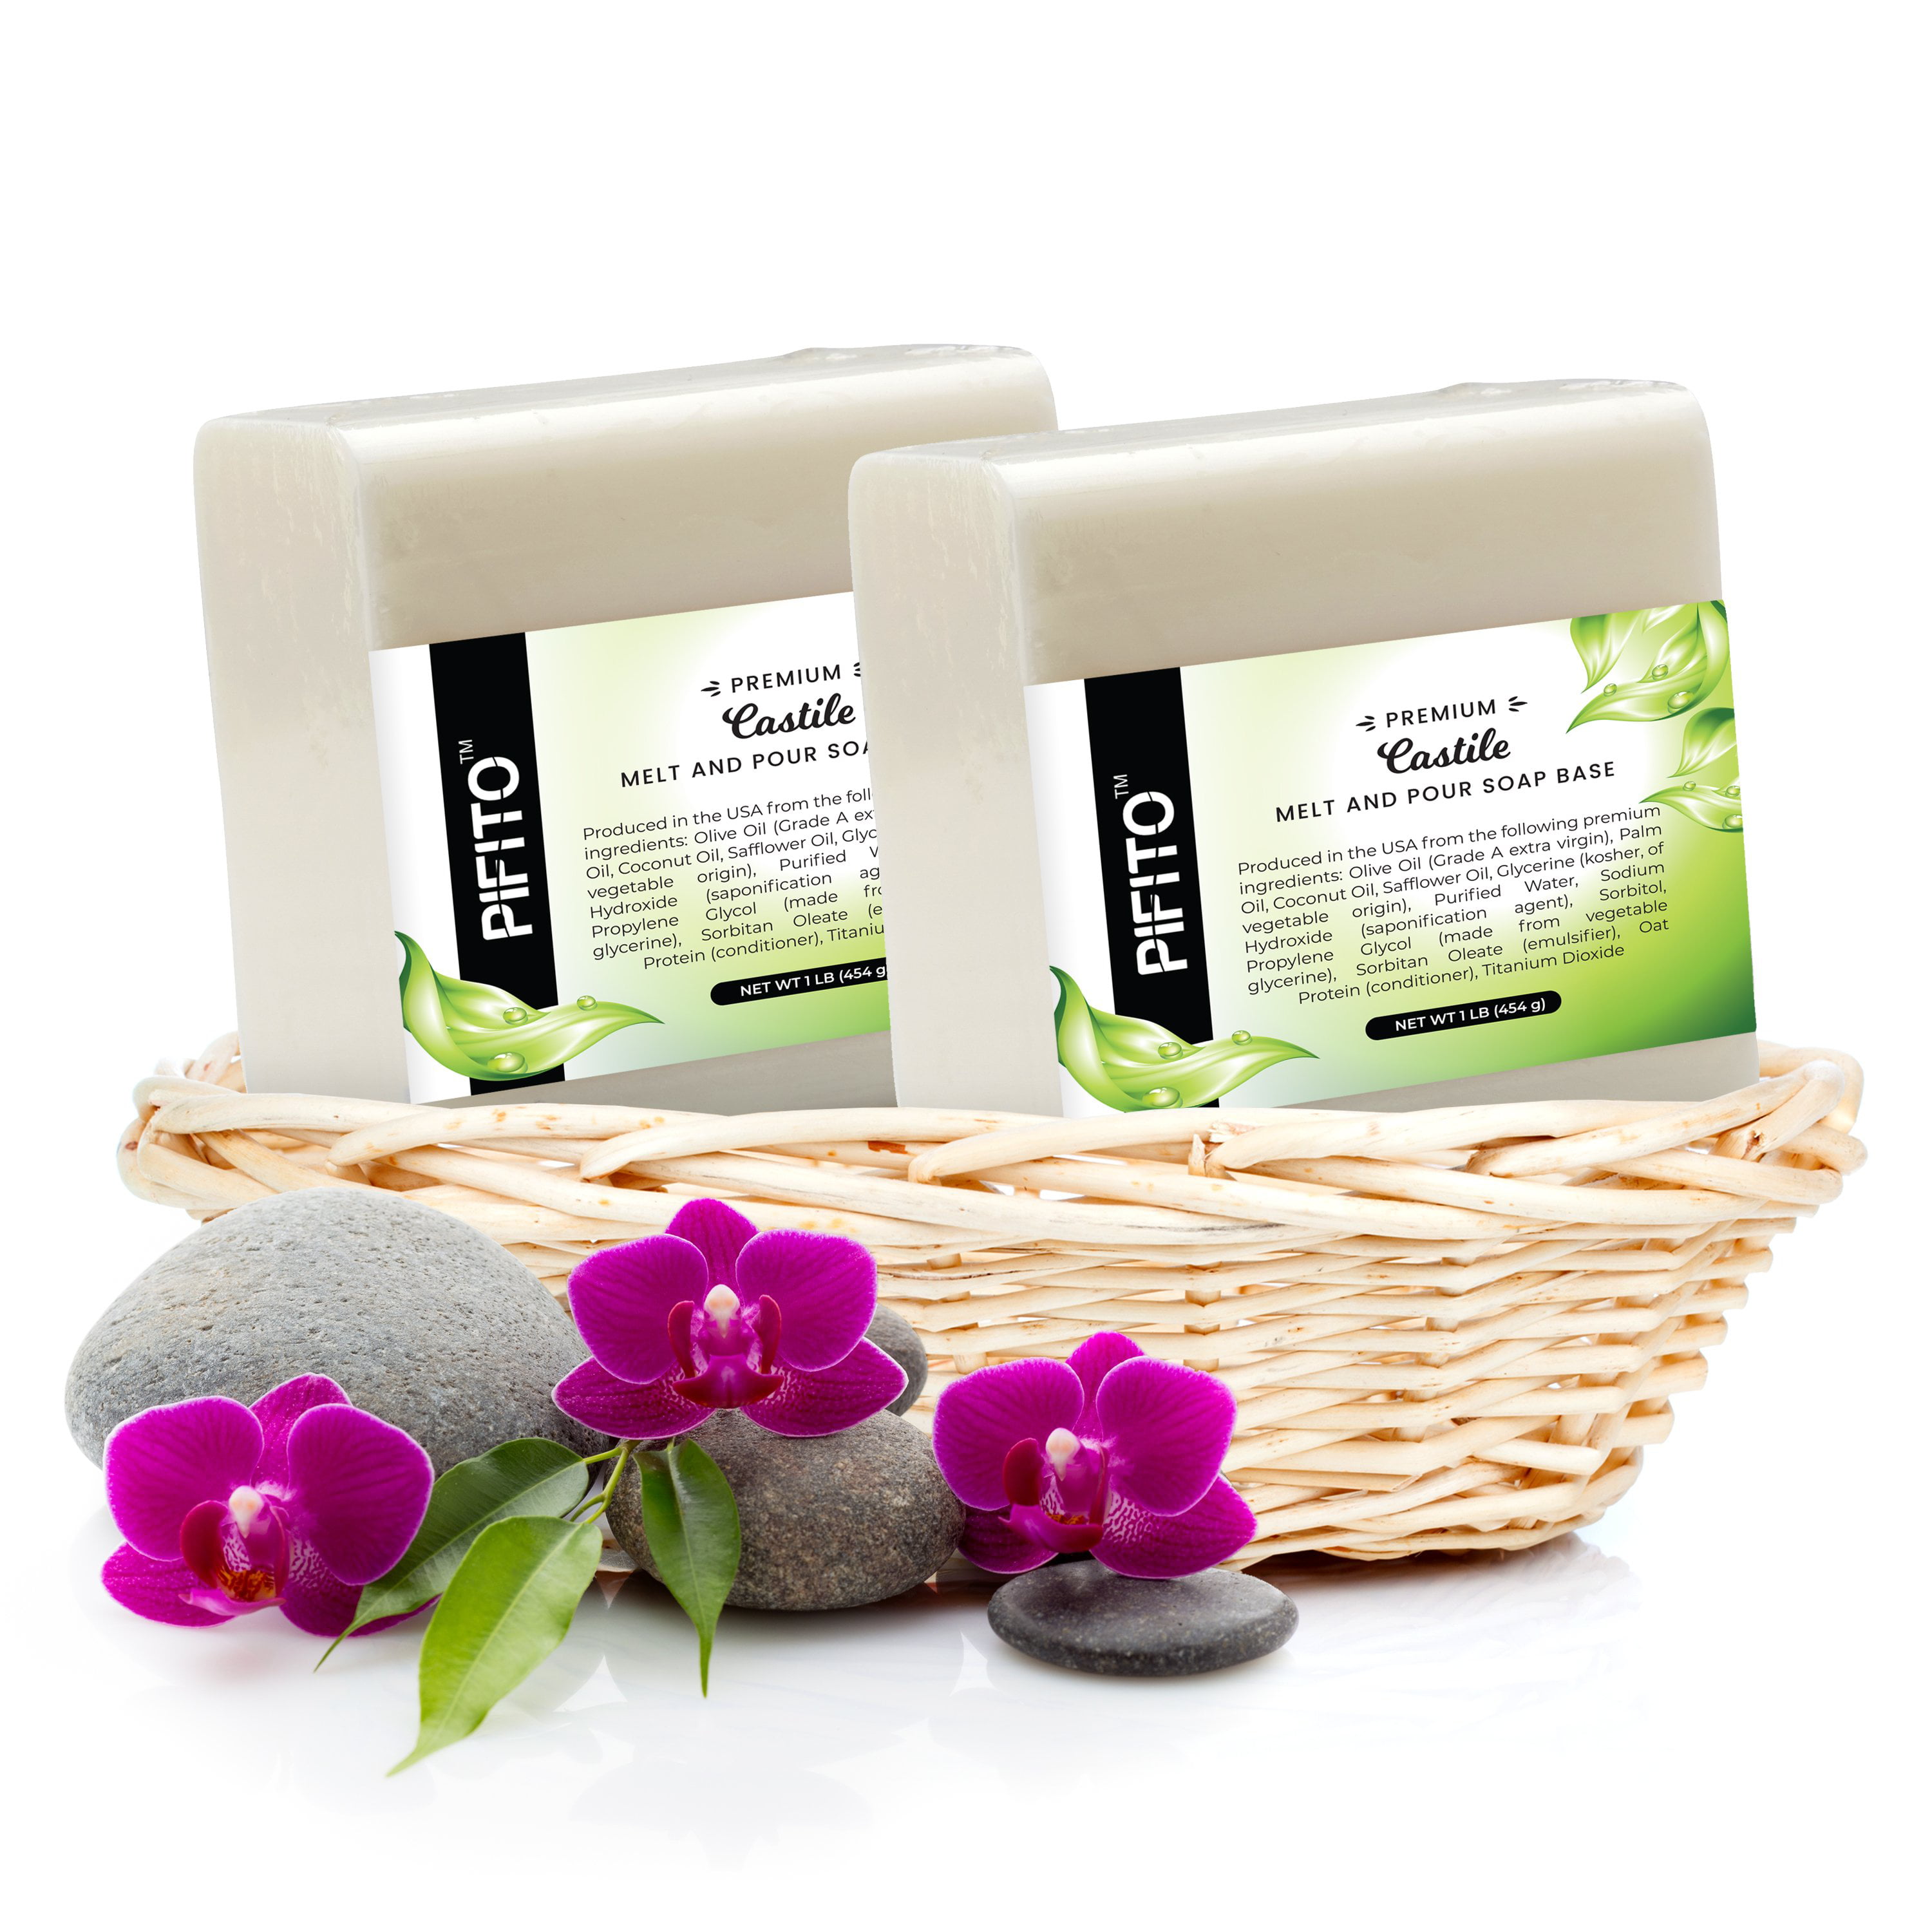 Pifito Castile Melt and Pour Soap Base (2 lb) │ Premium 100% Natural Castile Melt And Pour Soap Base